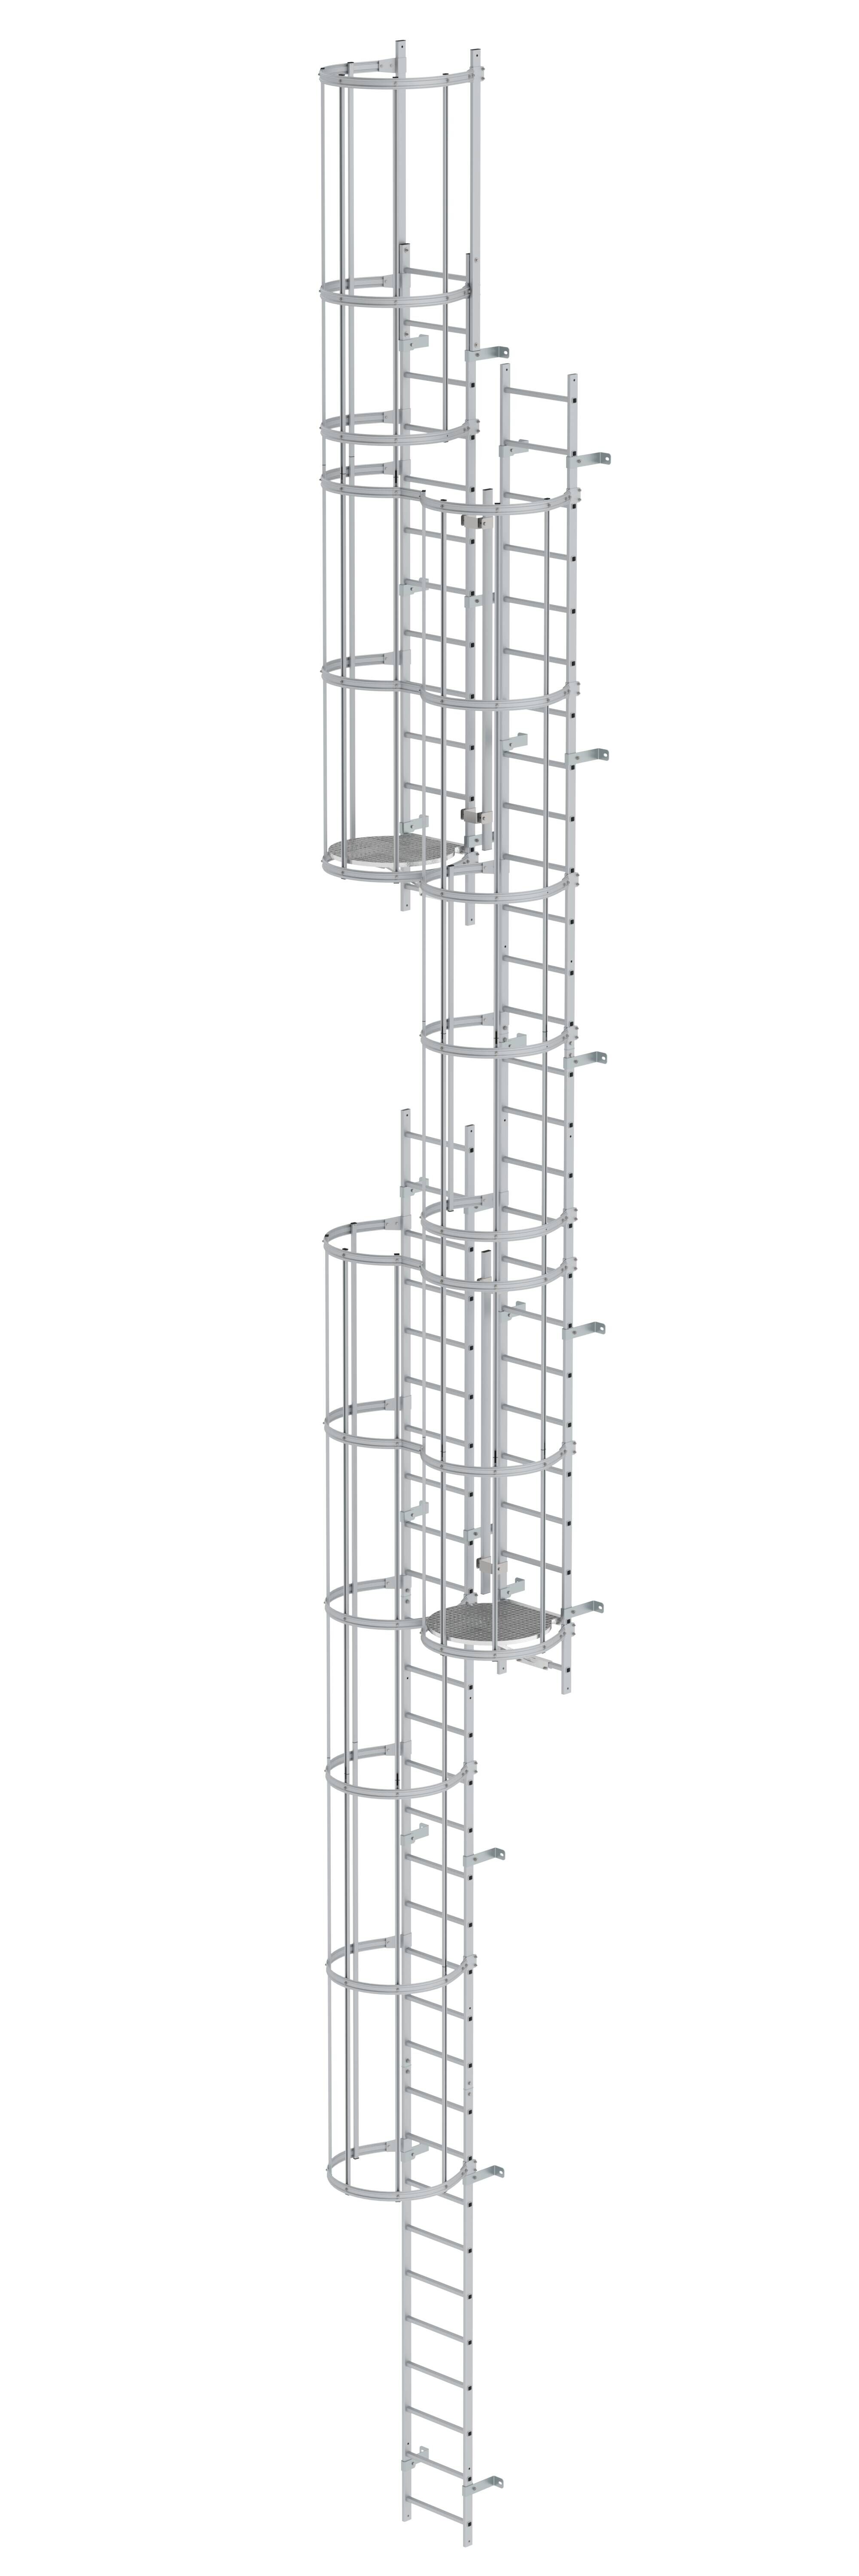 Mehrzügige Steigleiter mit Rückenschutz (Maschinen) Aluminium eloxiert 14,36m